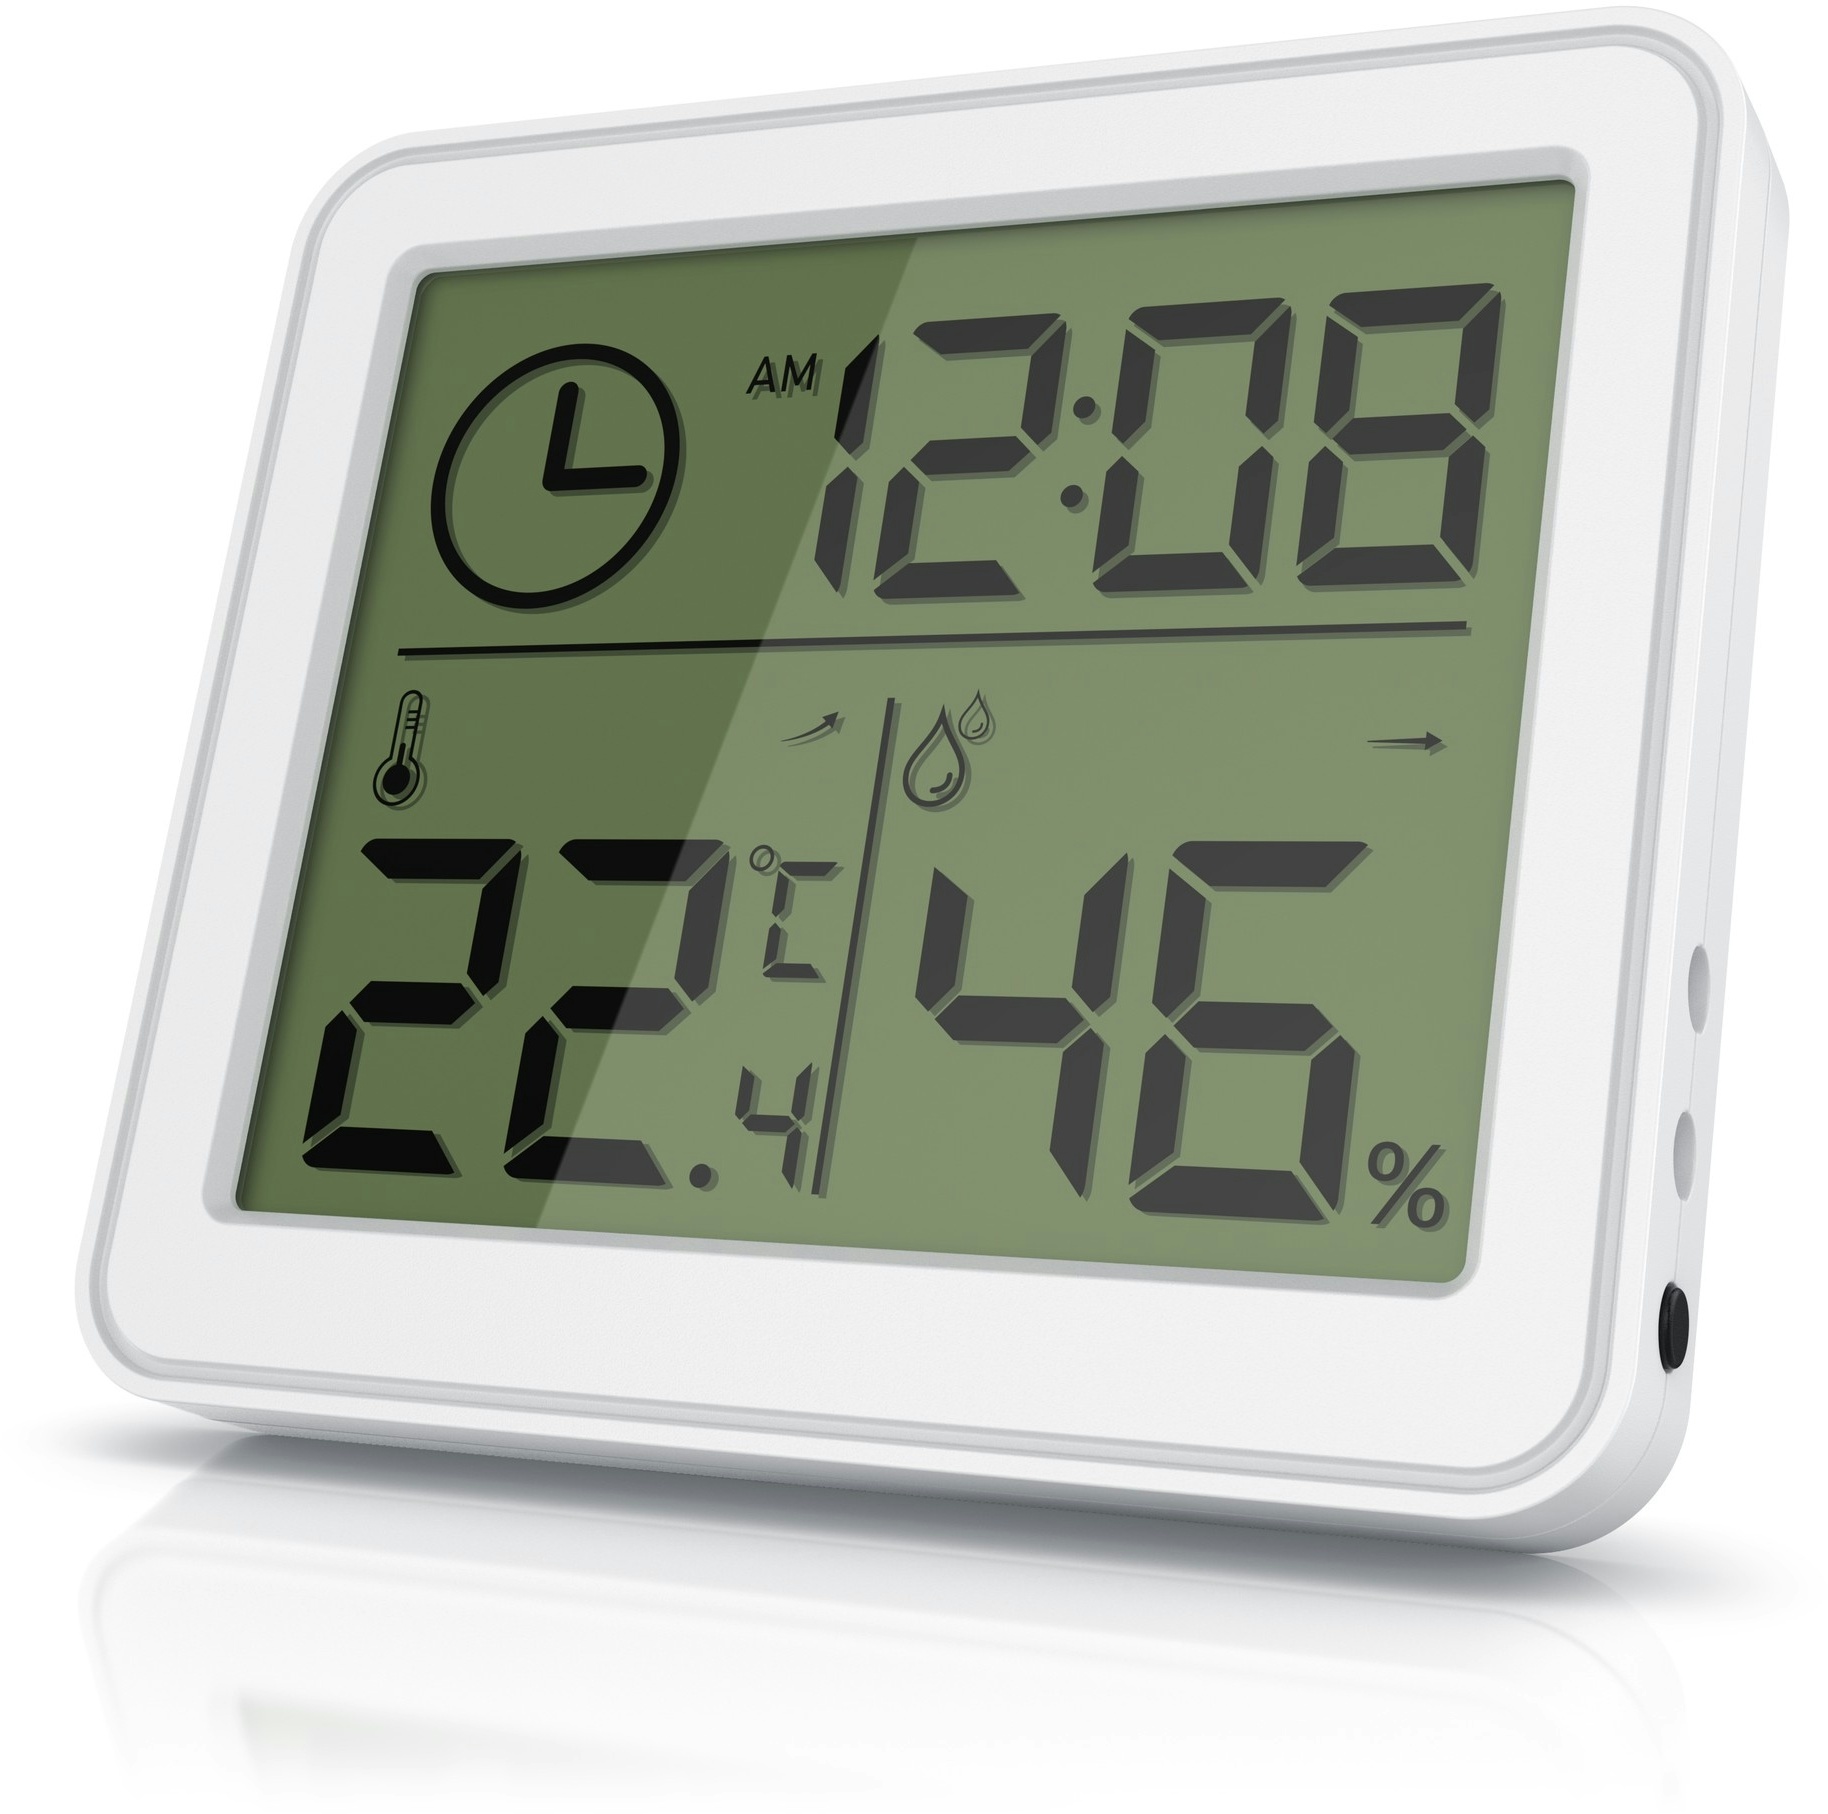 BEARWARE - Thermometer Hygrometer - Temperatur und Luftfeuchtigkeit - Uhrzeit - gut ablesbare LCD-Anzeige - Magnethalter, Aufhängeöse und Standfuß